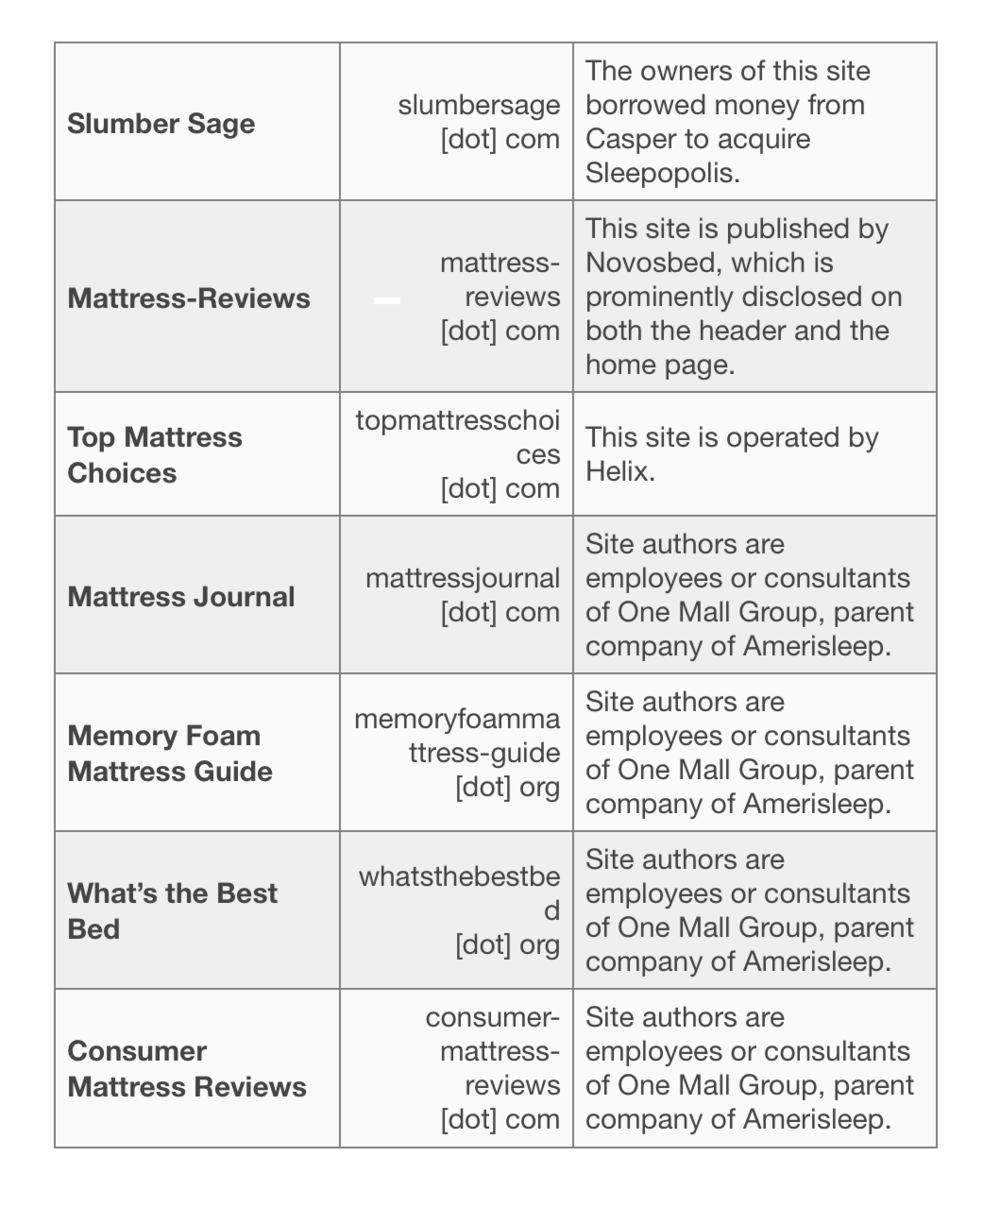 biased mattress review sites